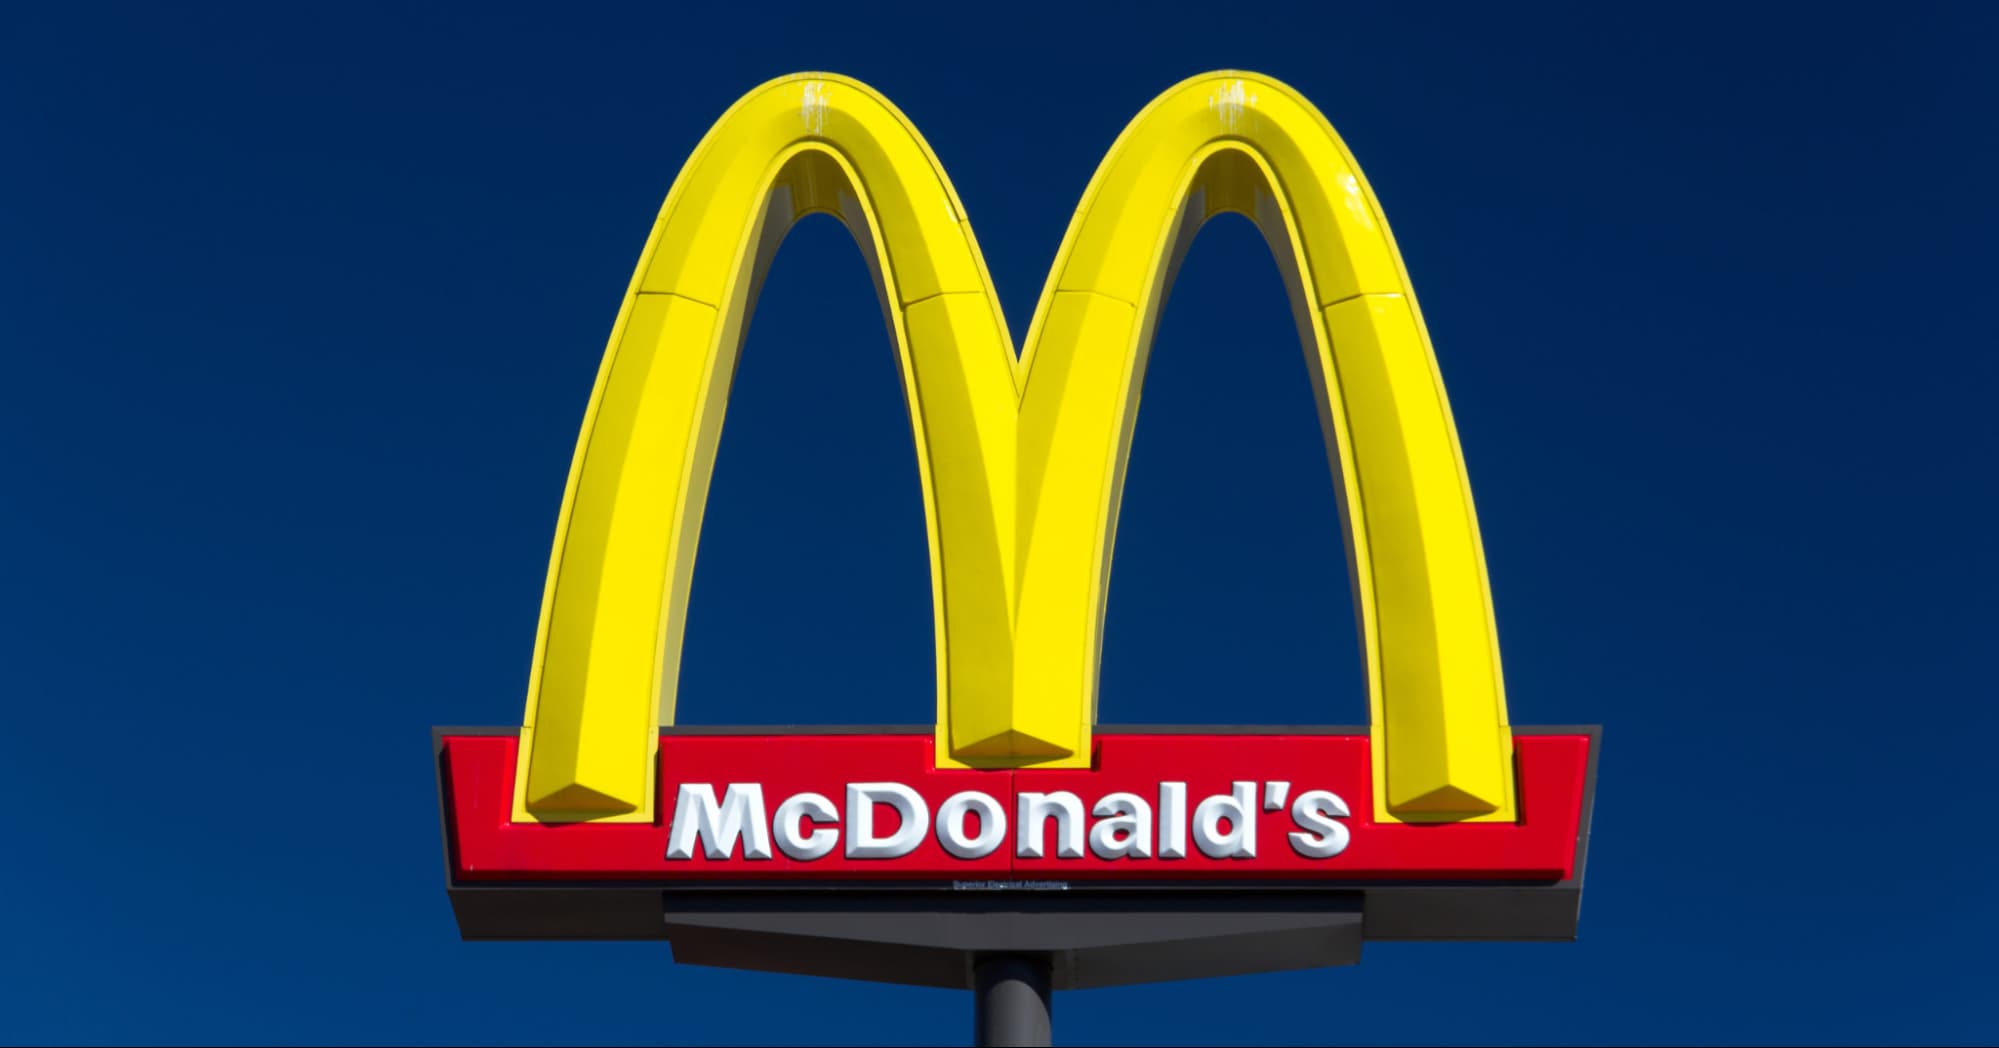 McDonalds tân trang lại bao bì với thiết kế vui tươi và sống động